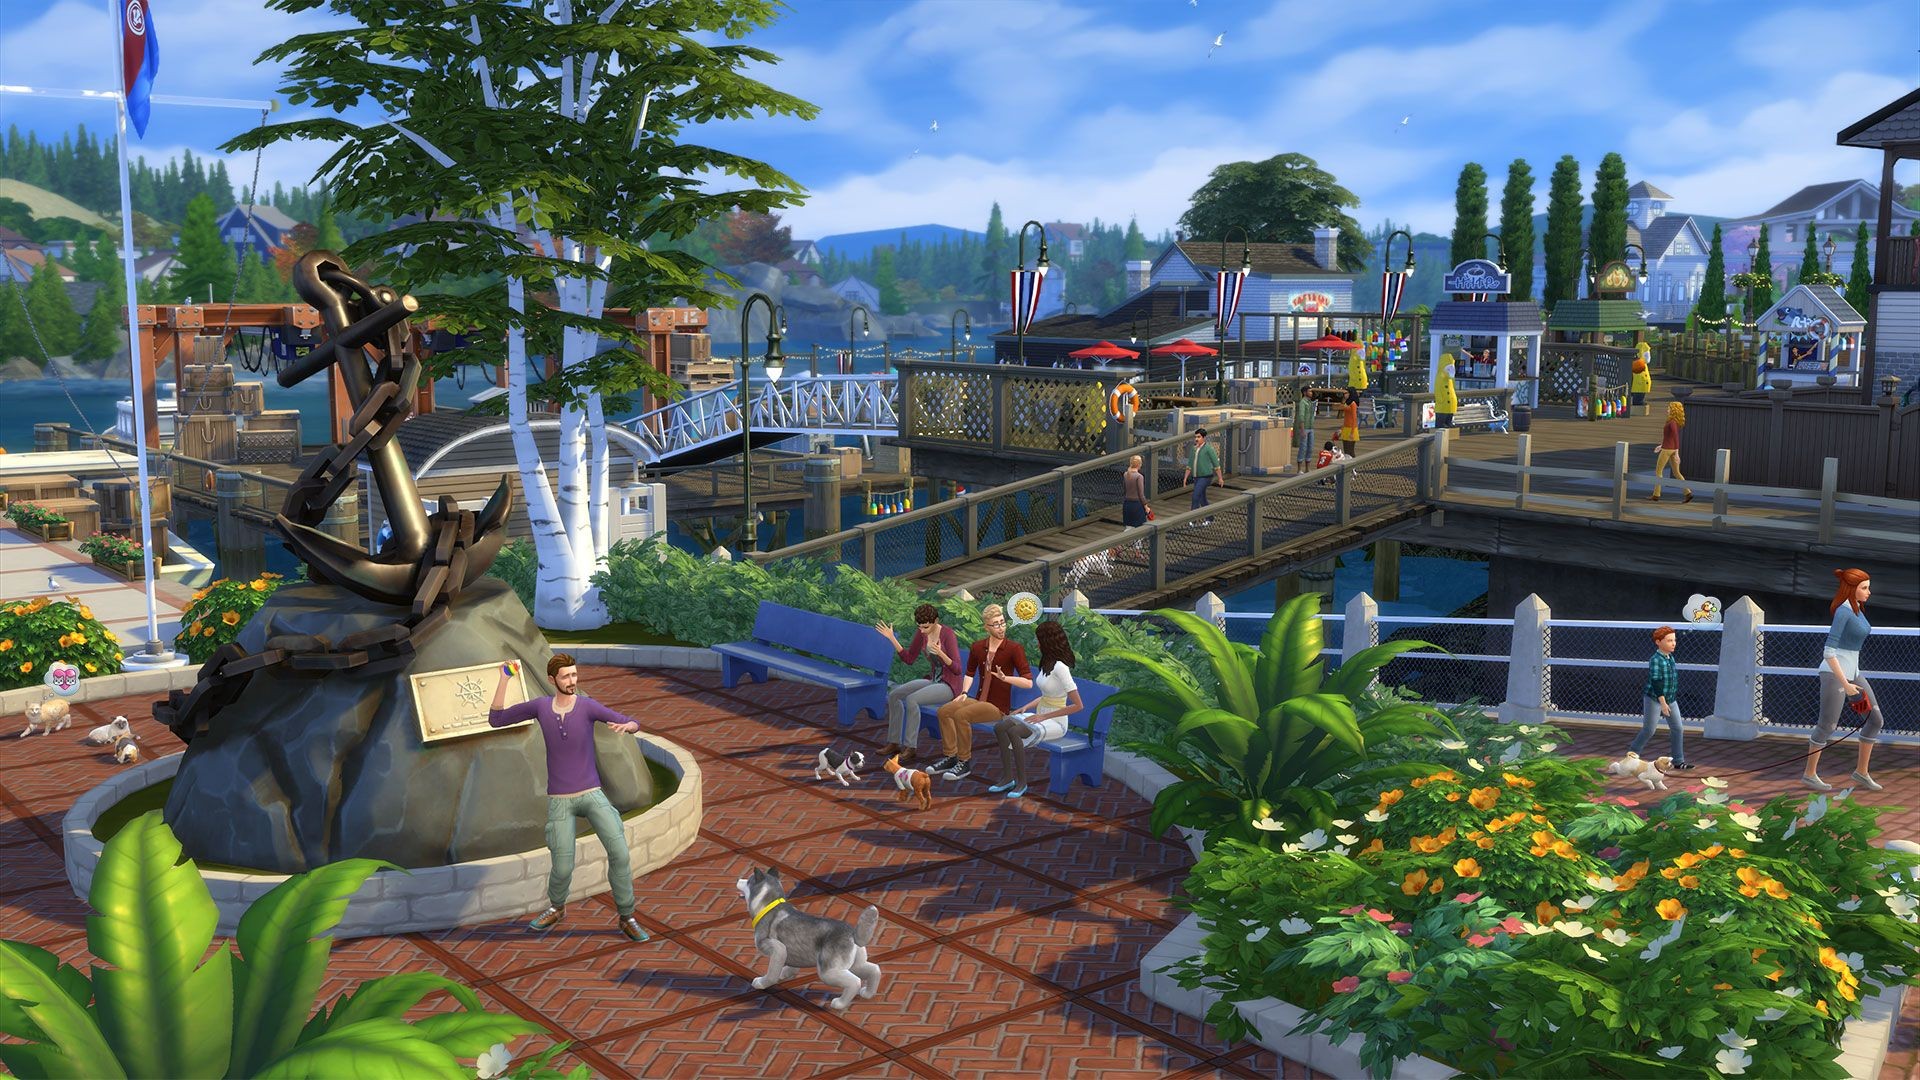 The Sims 4 światy Do Pobrania The Sims 4 do pobrania za darmo dla wszystkich zarejestrowanych w